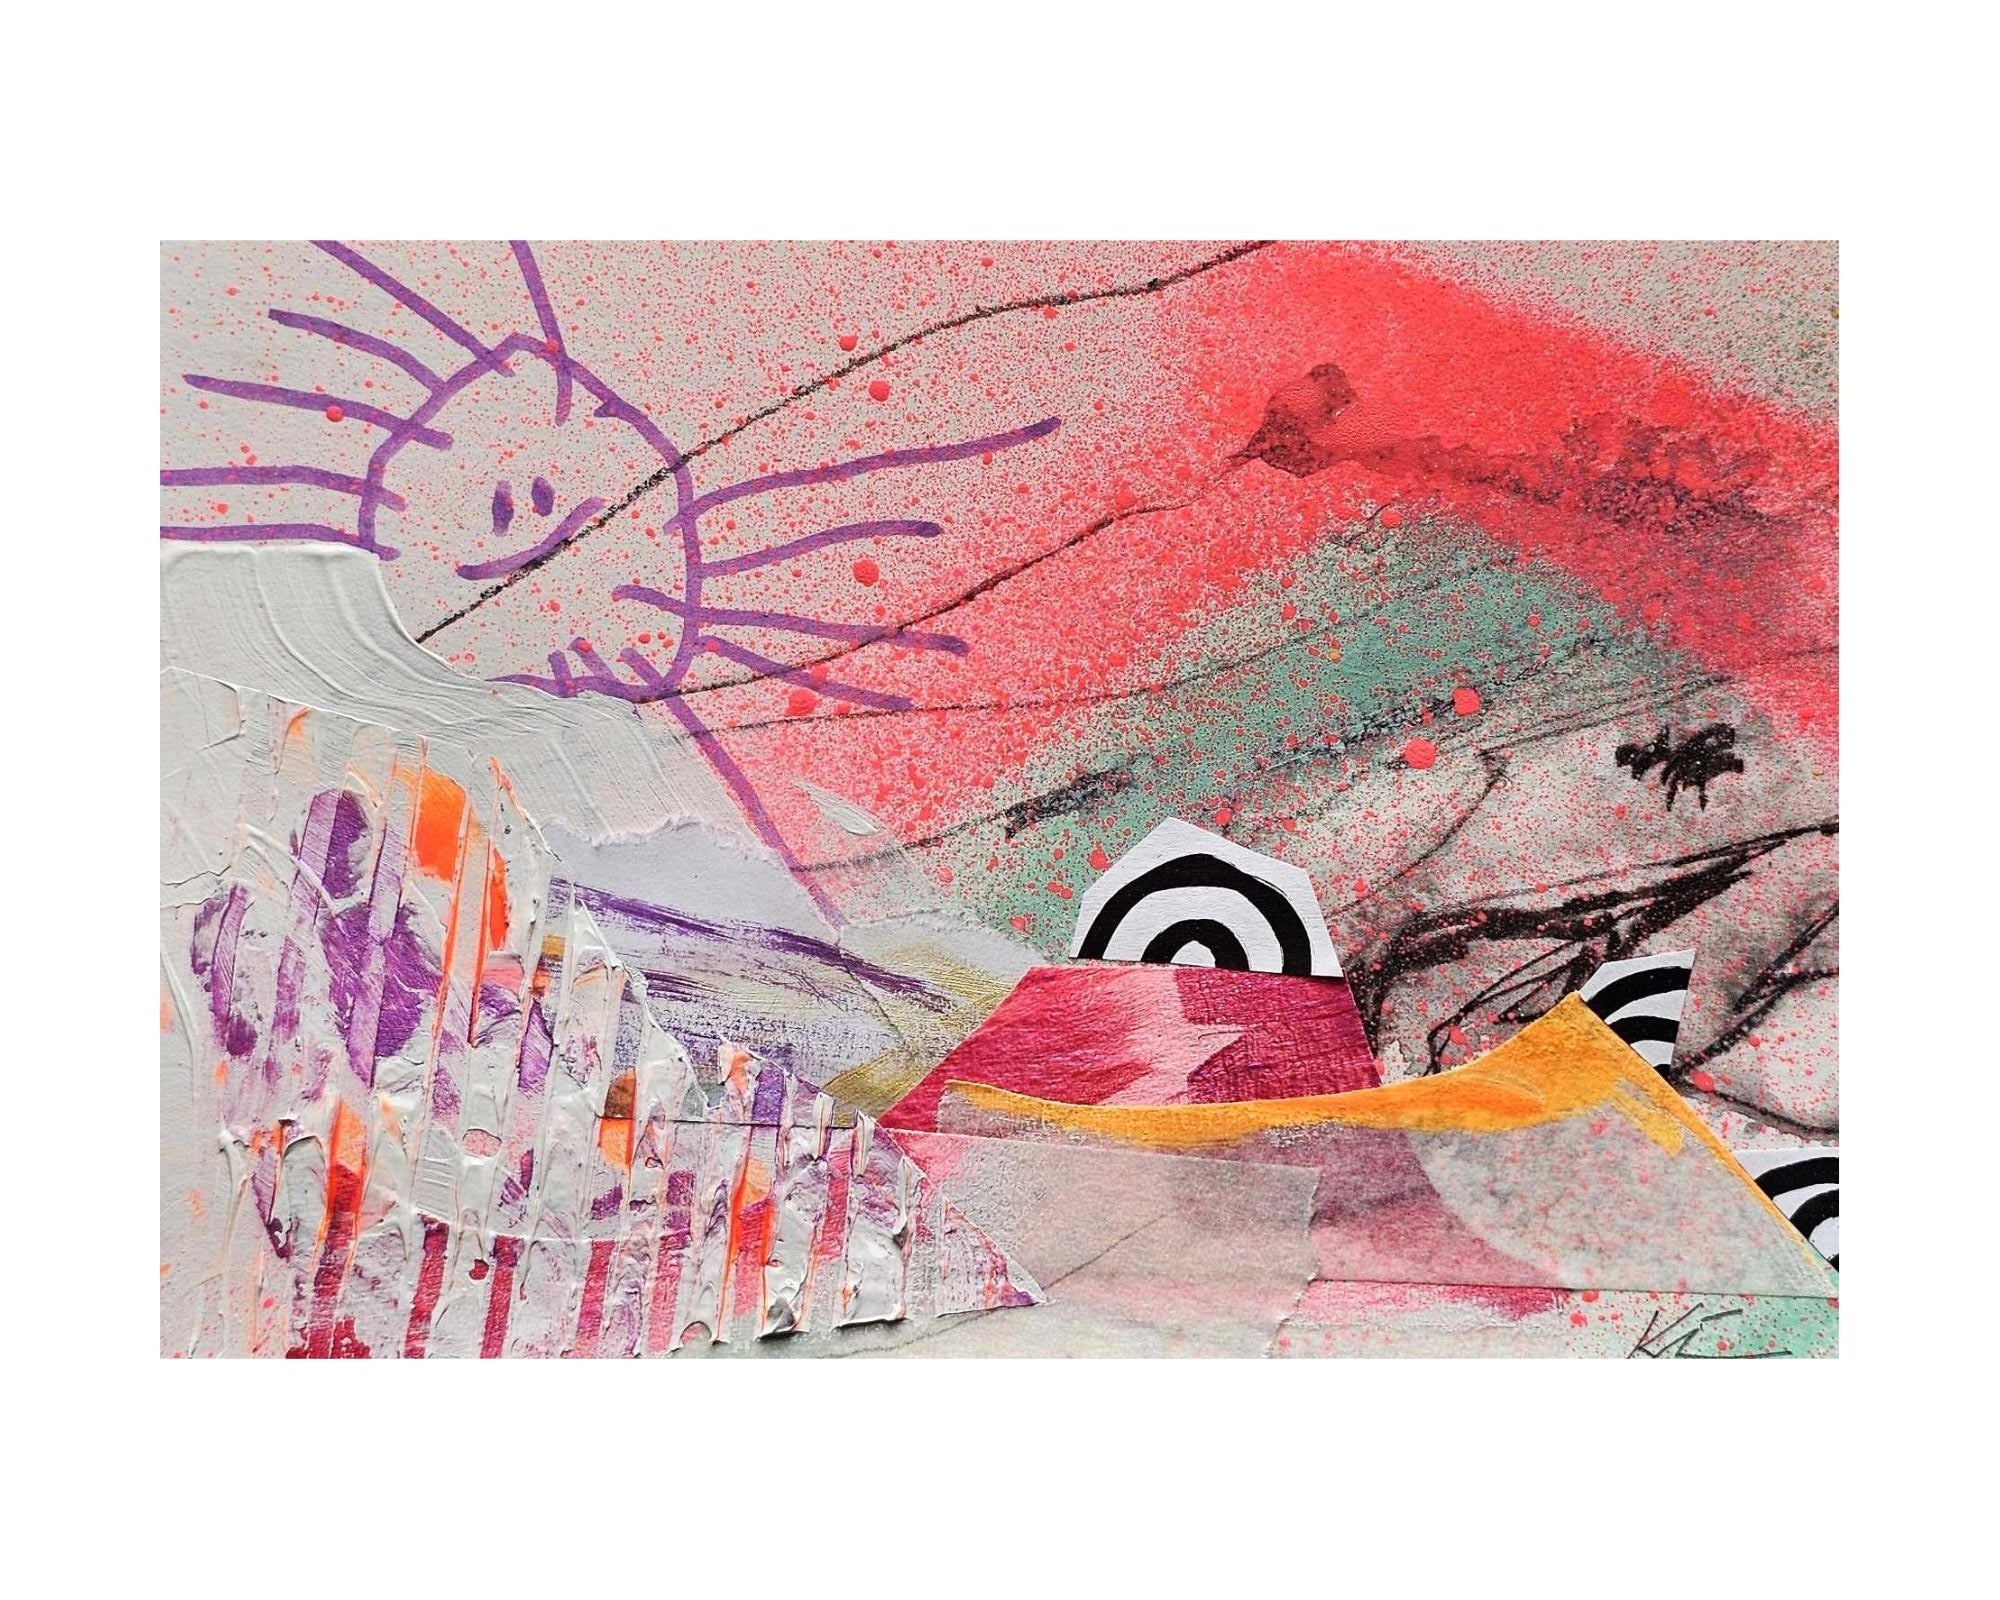 Peinture acrylique et aérosol sur carton : une miniature évoquant un paysage enfantin, dominé par des teintes roses.